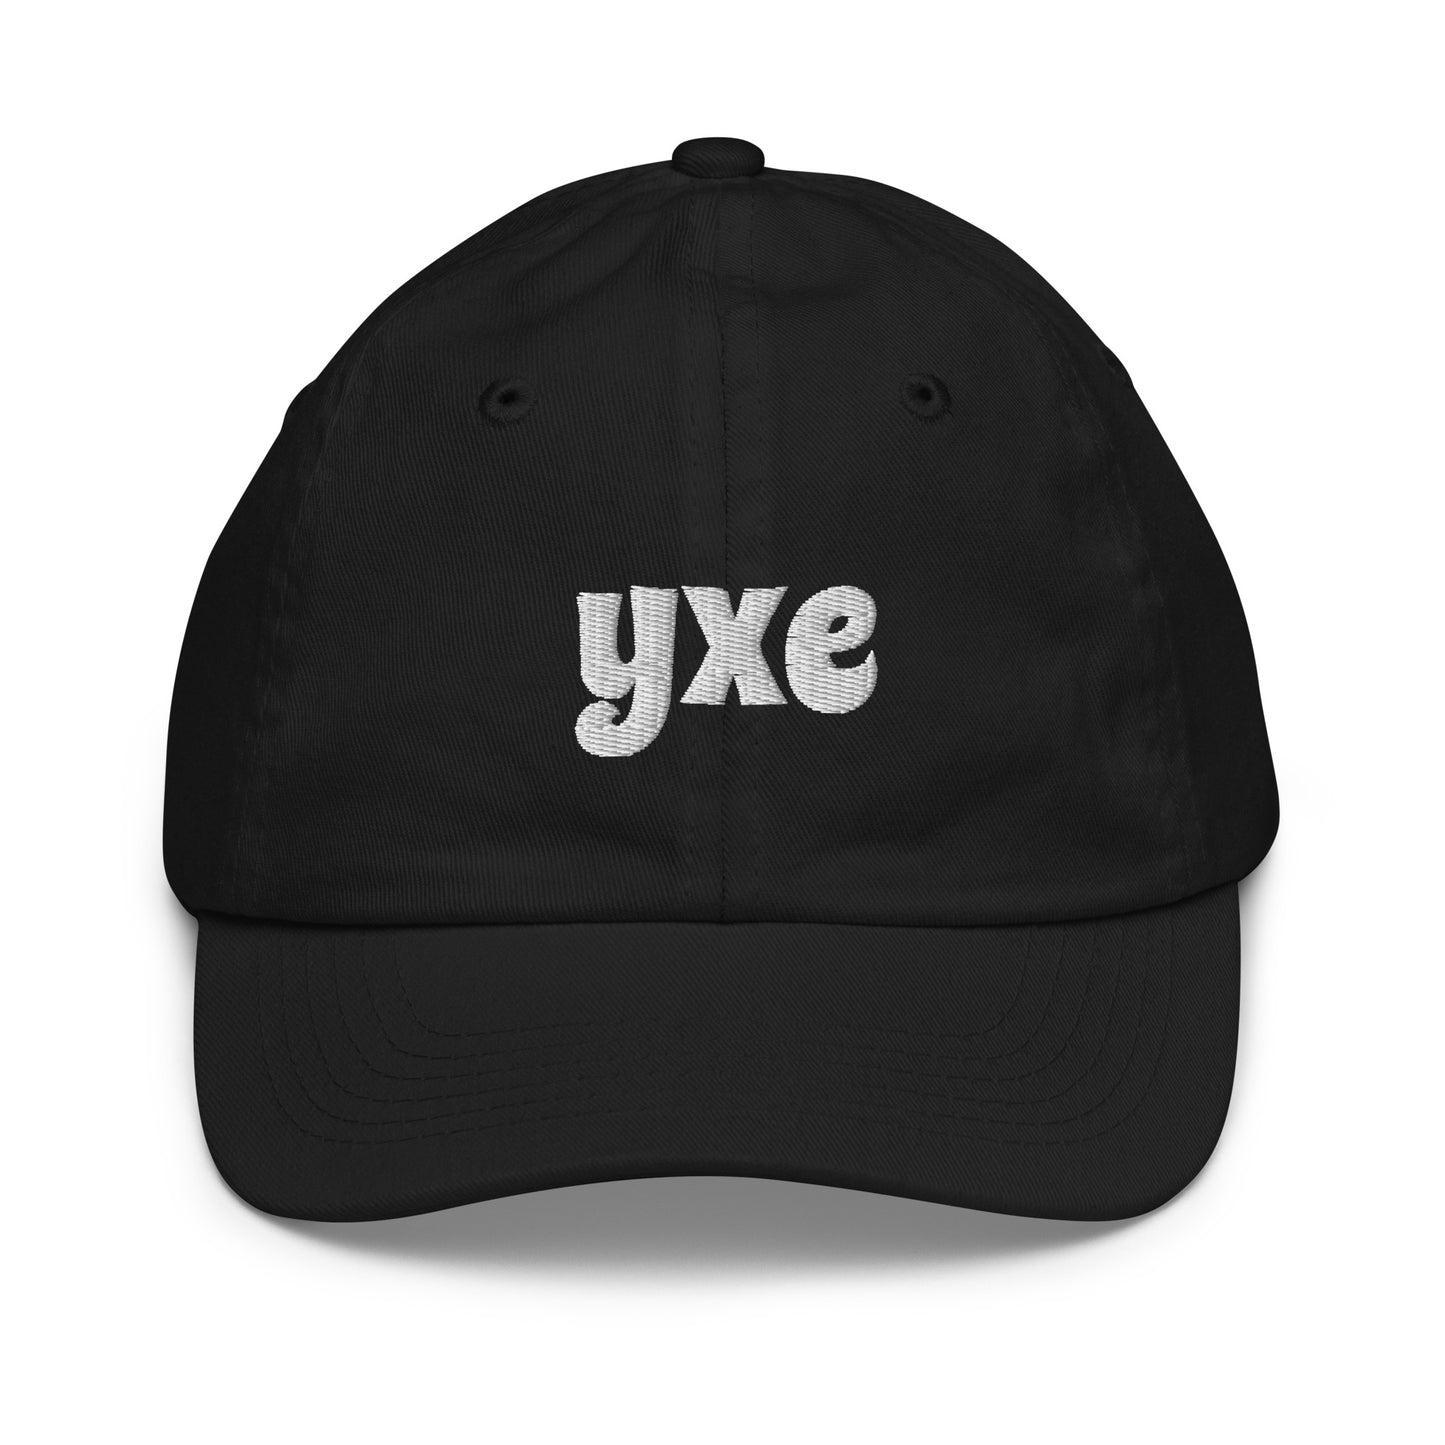 Groovy Kid's Baseball Cap - White • YXE Saskatoon • YHM Designs - Image 10